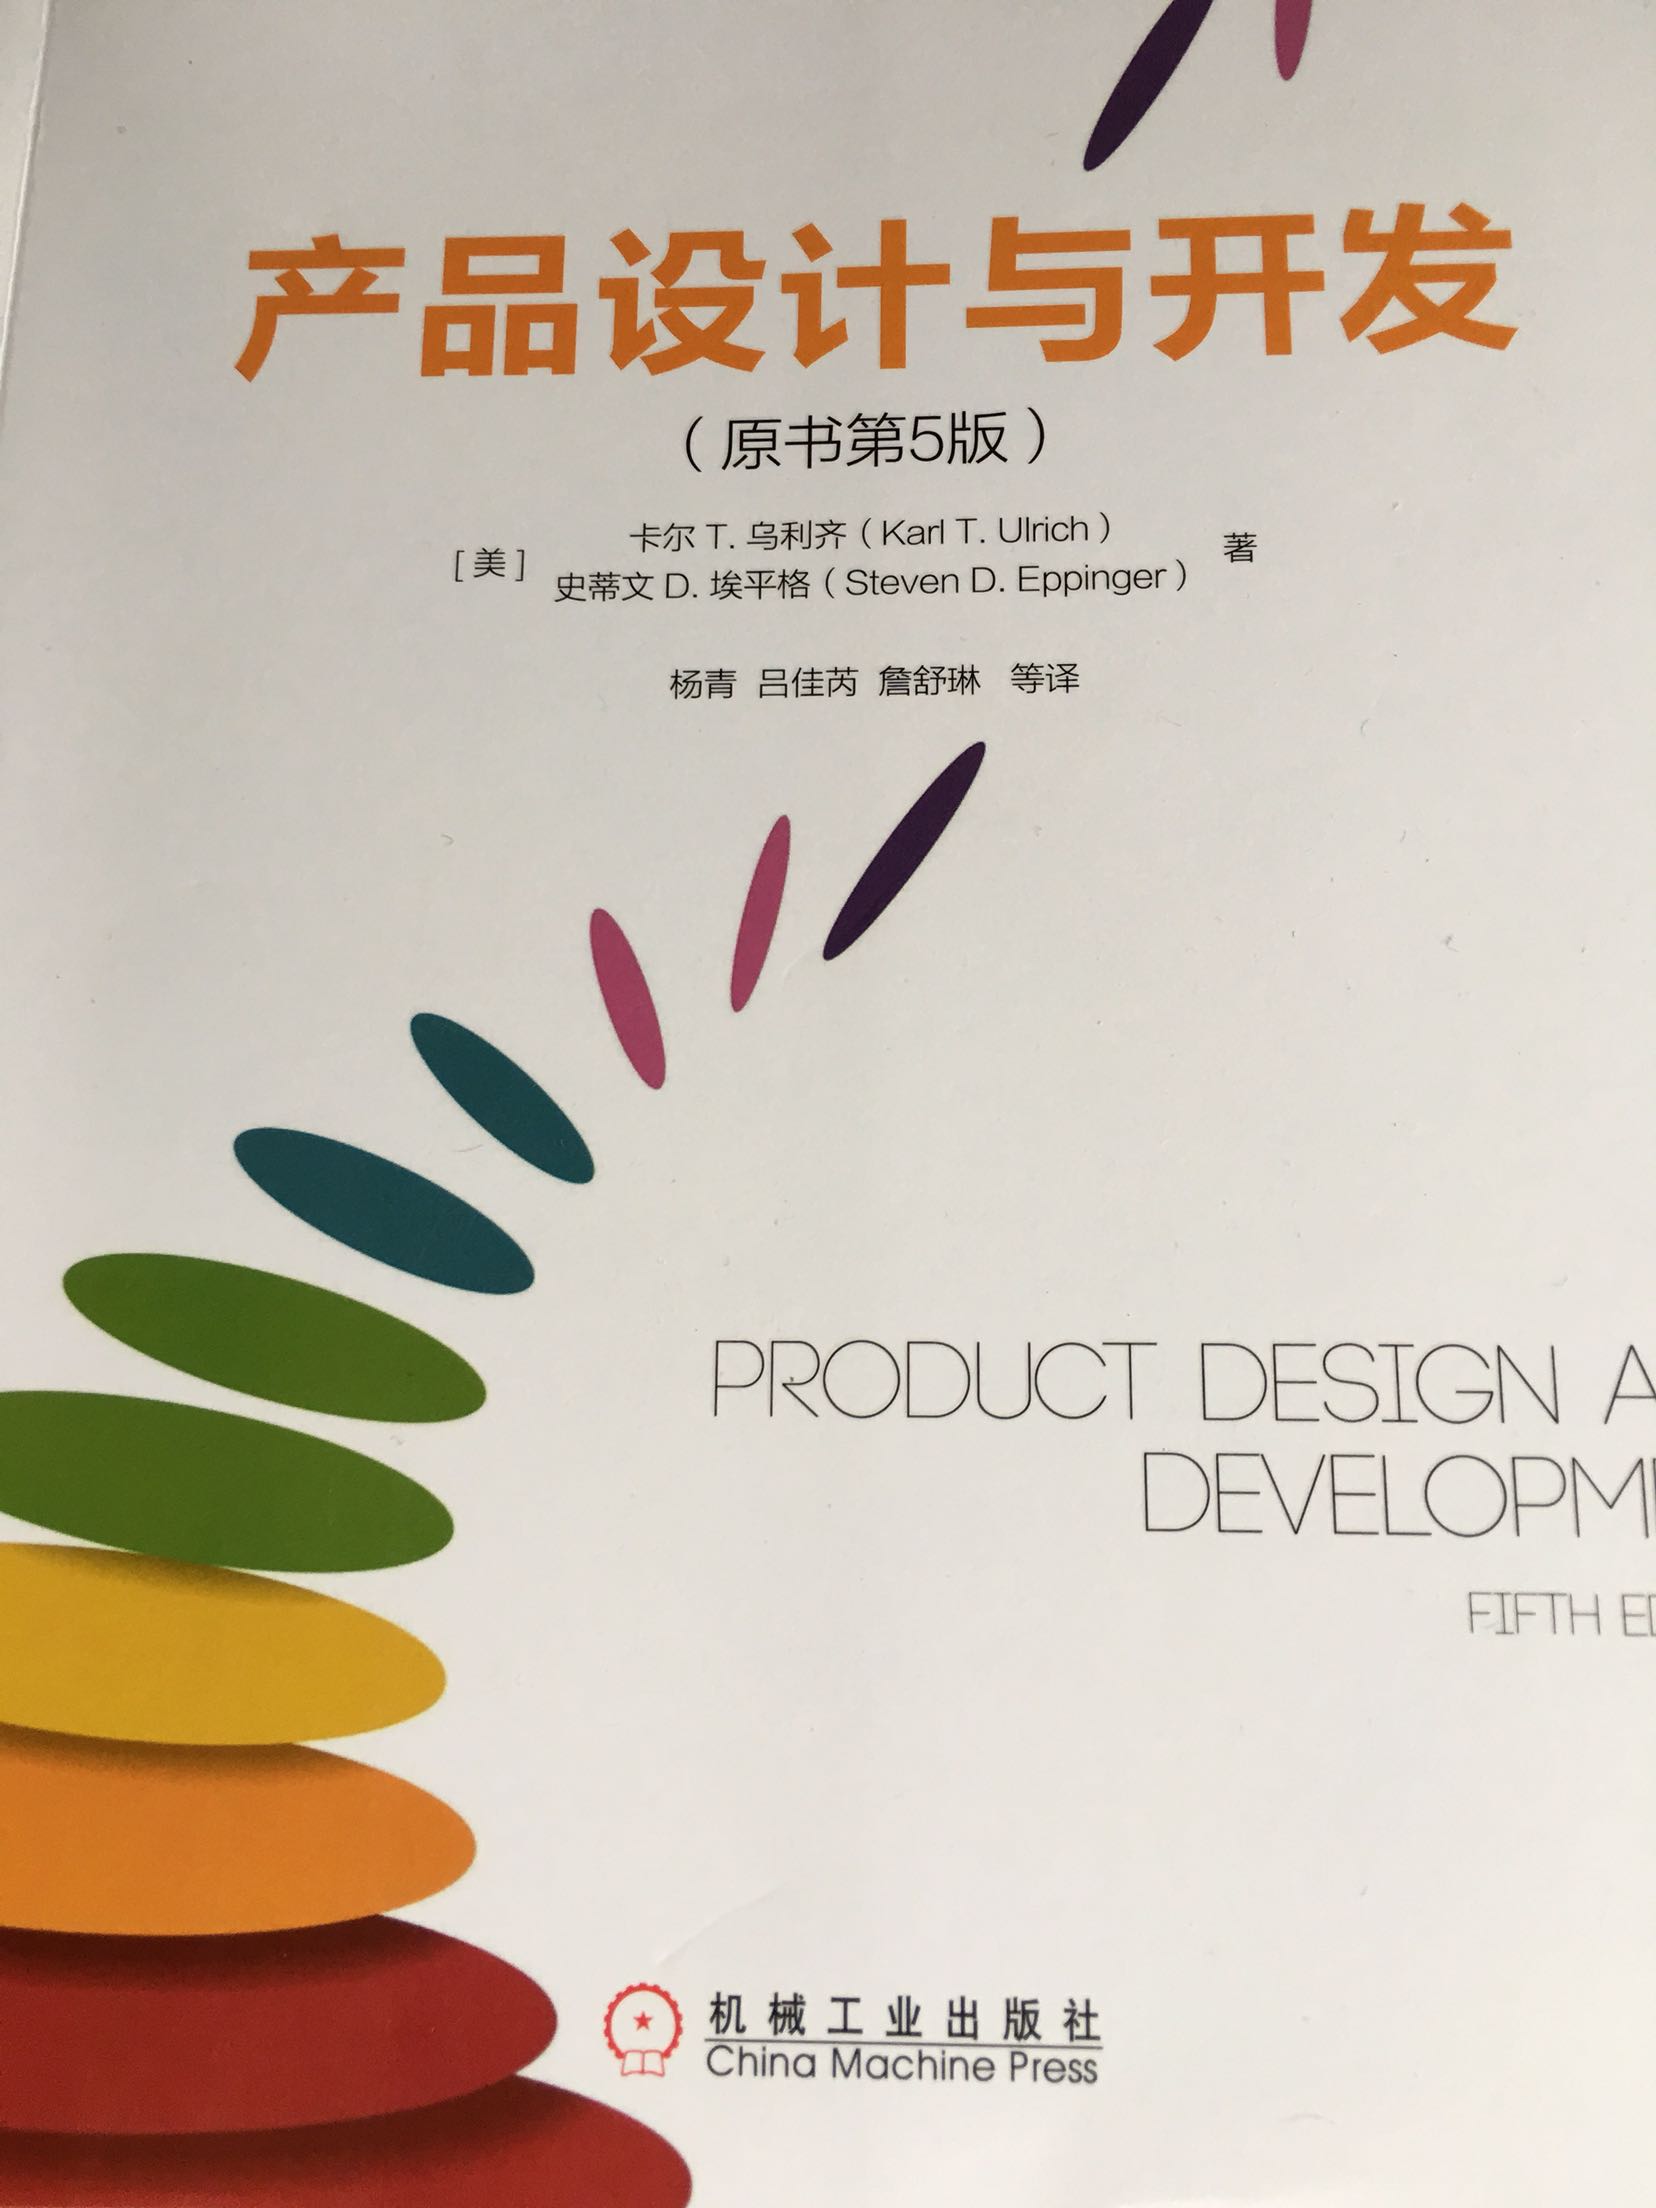 没有工业设计基础，这本书不是很基础的。